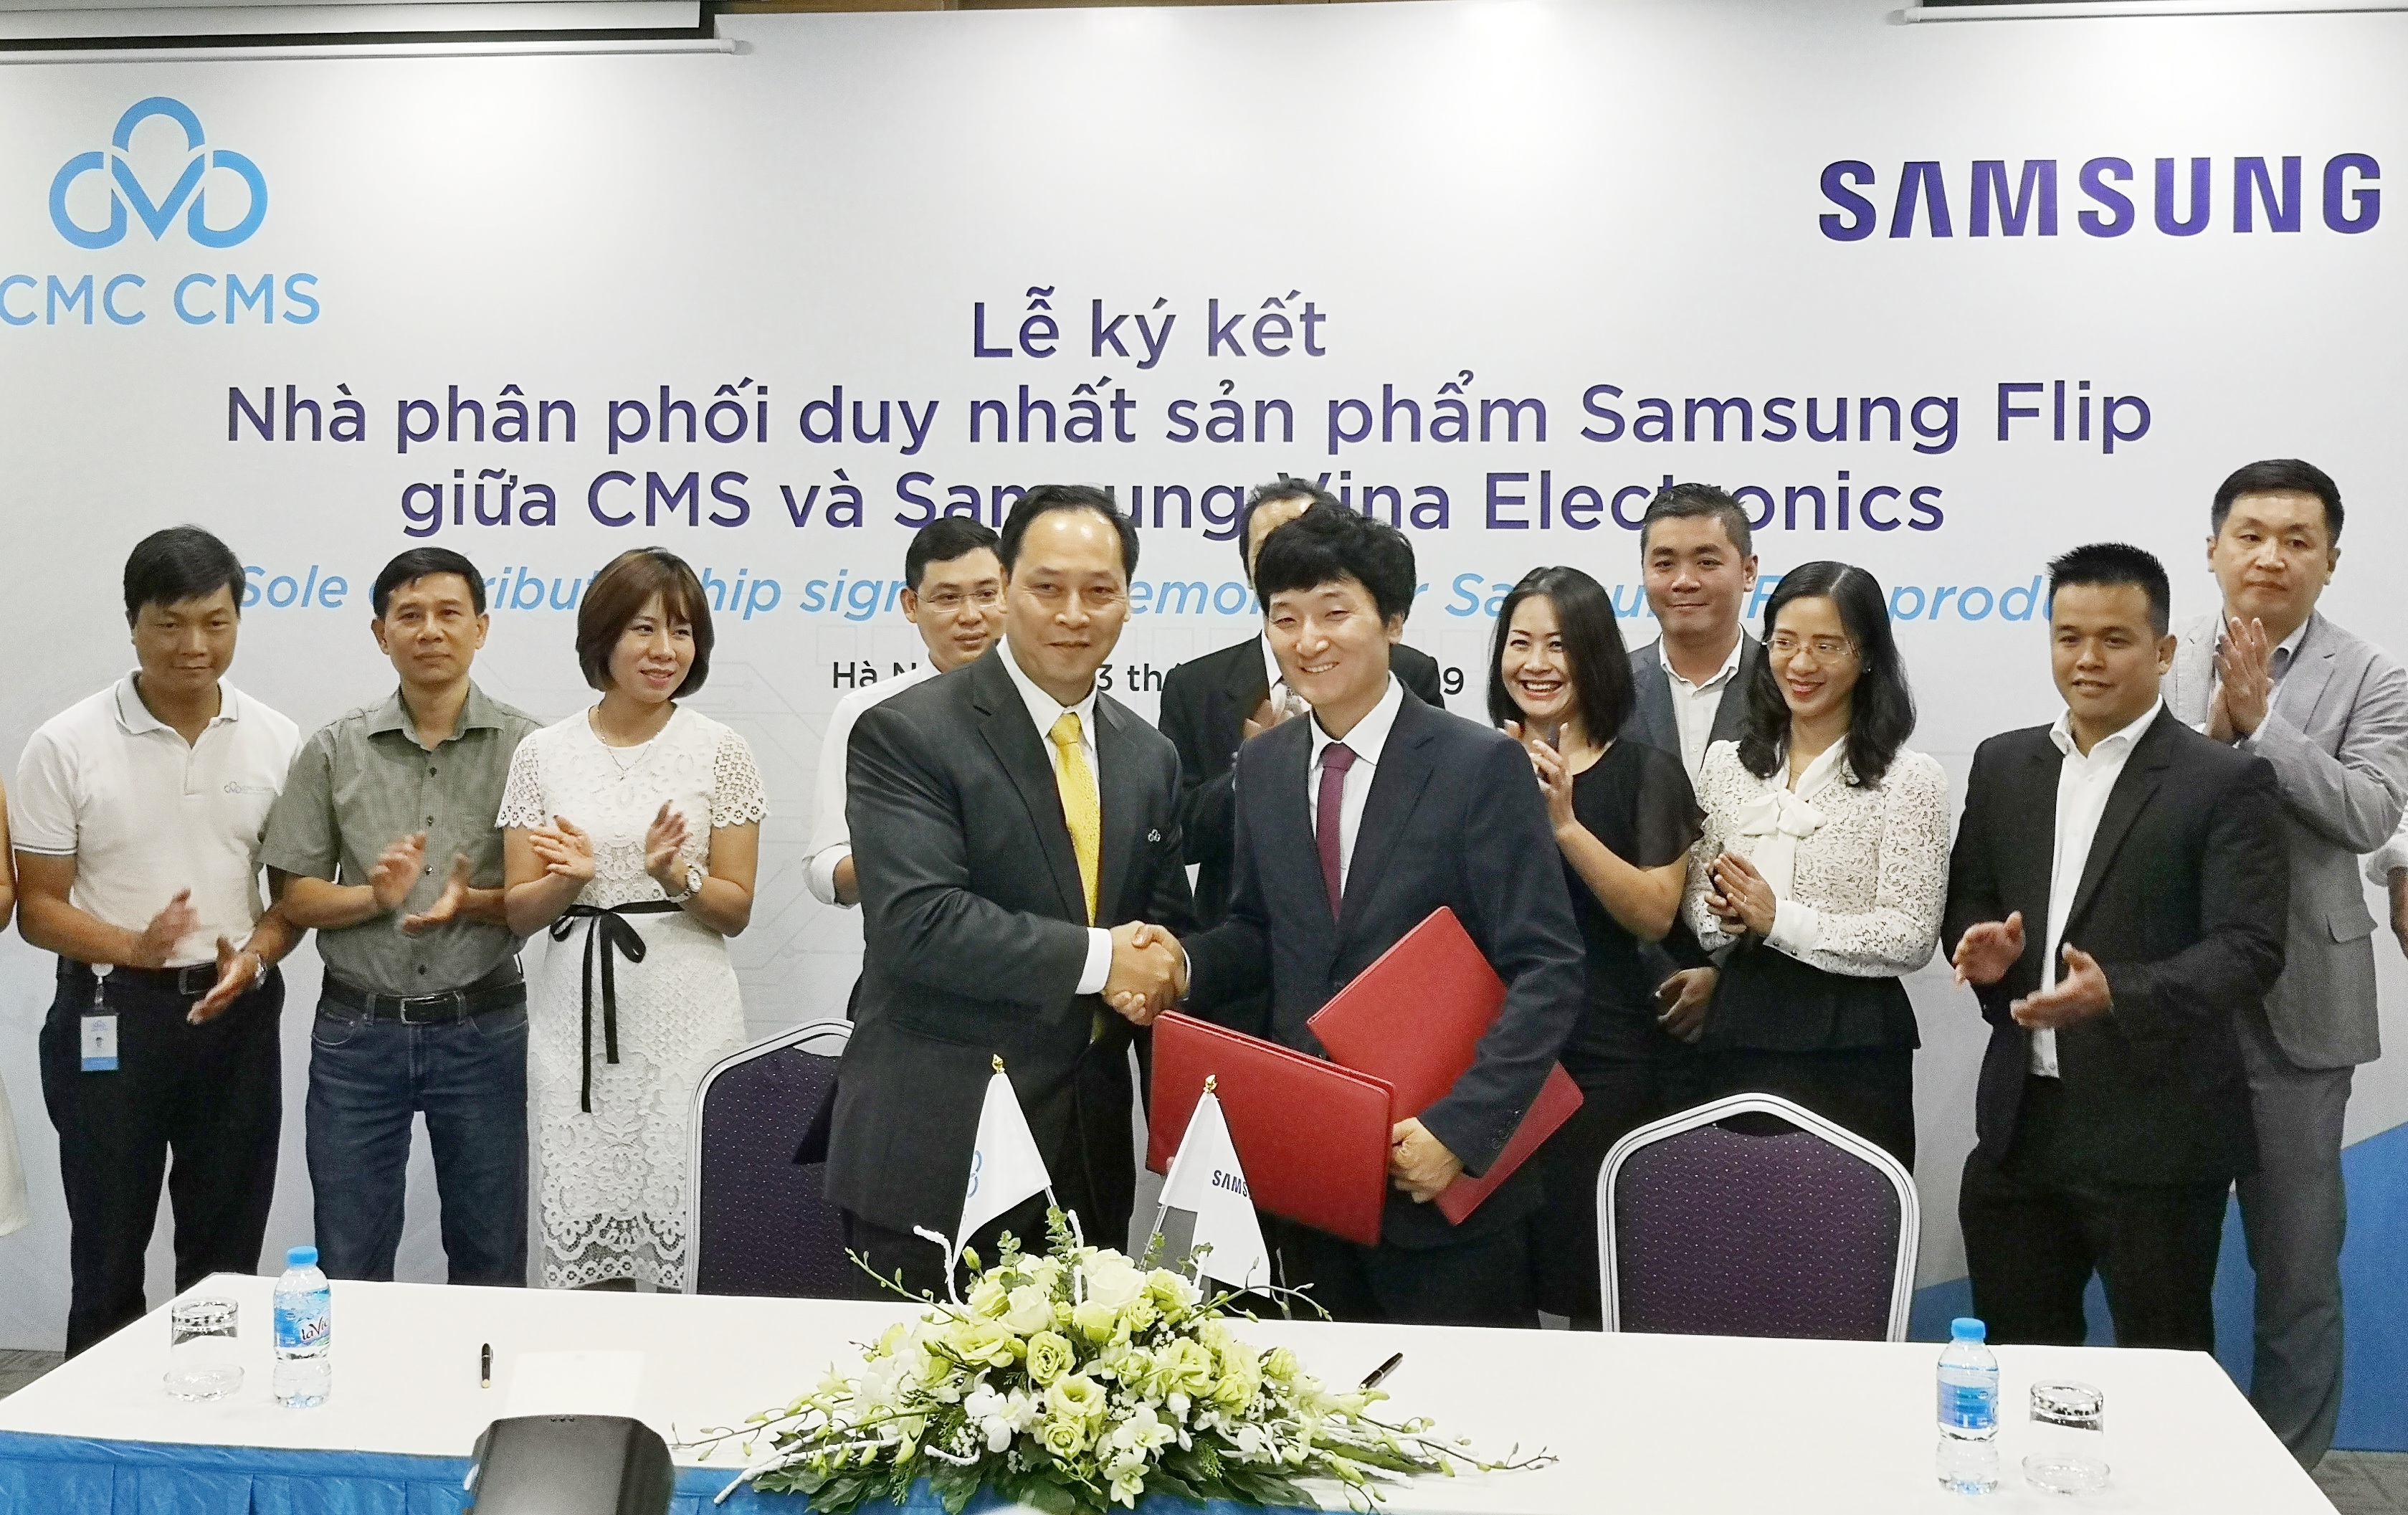 Bắt tay CMS, Samsung muốn chiếm lĩnh thị trường bảng tương tác tại Việt Nam